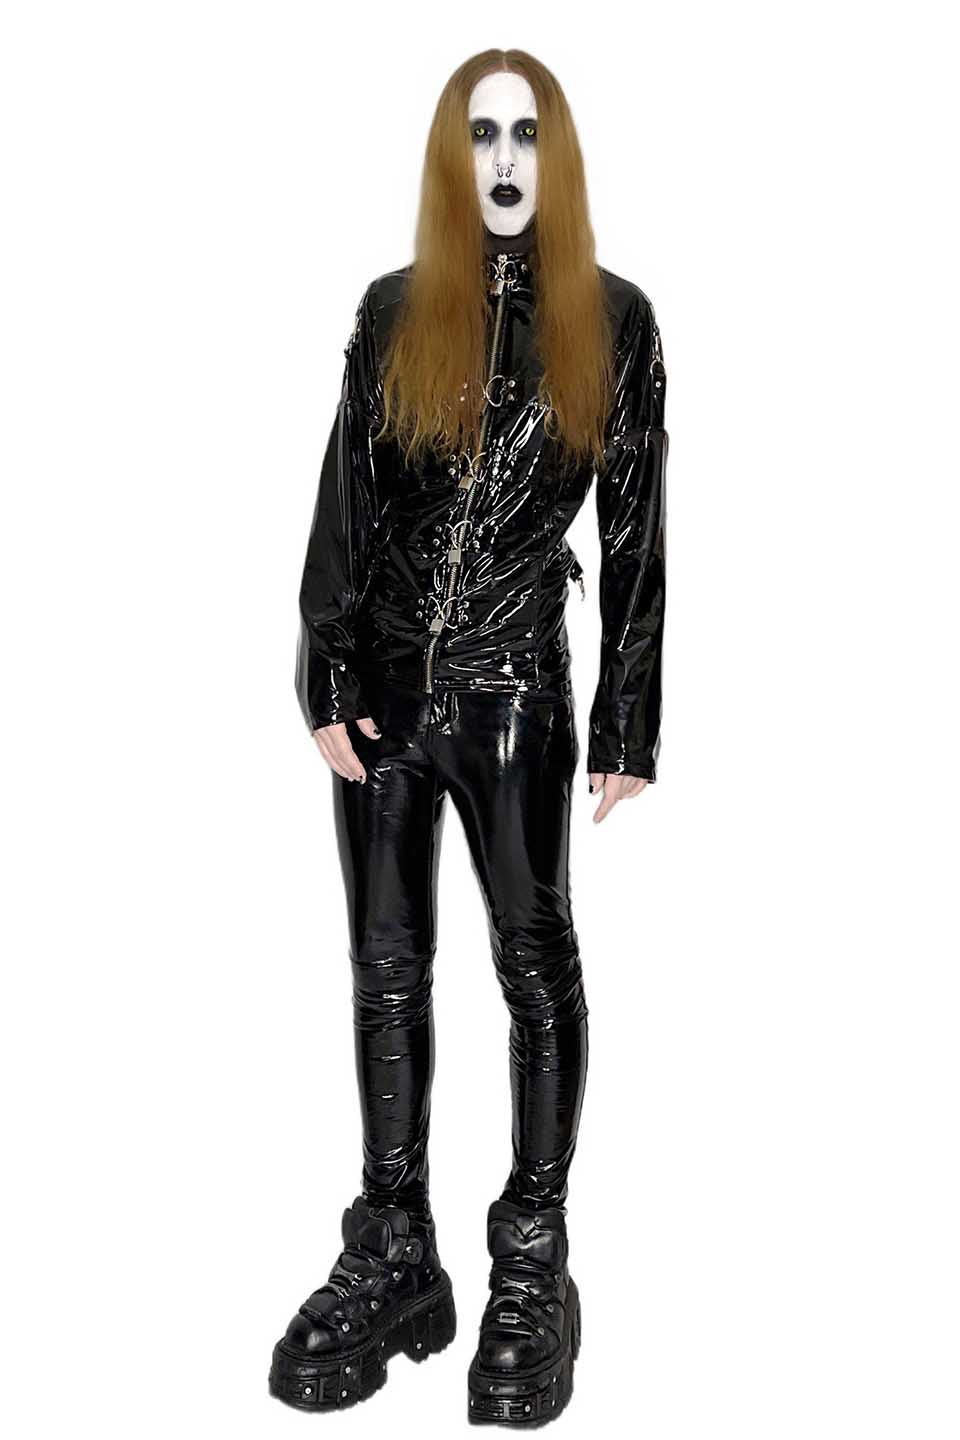 black straight jacket costume